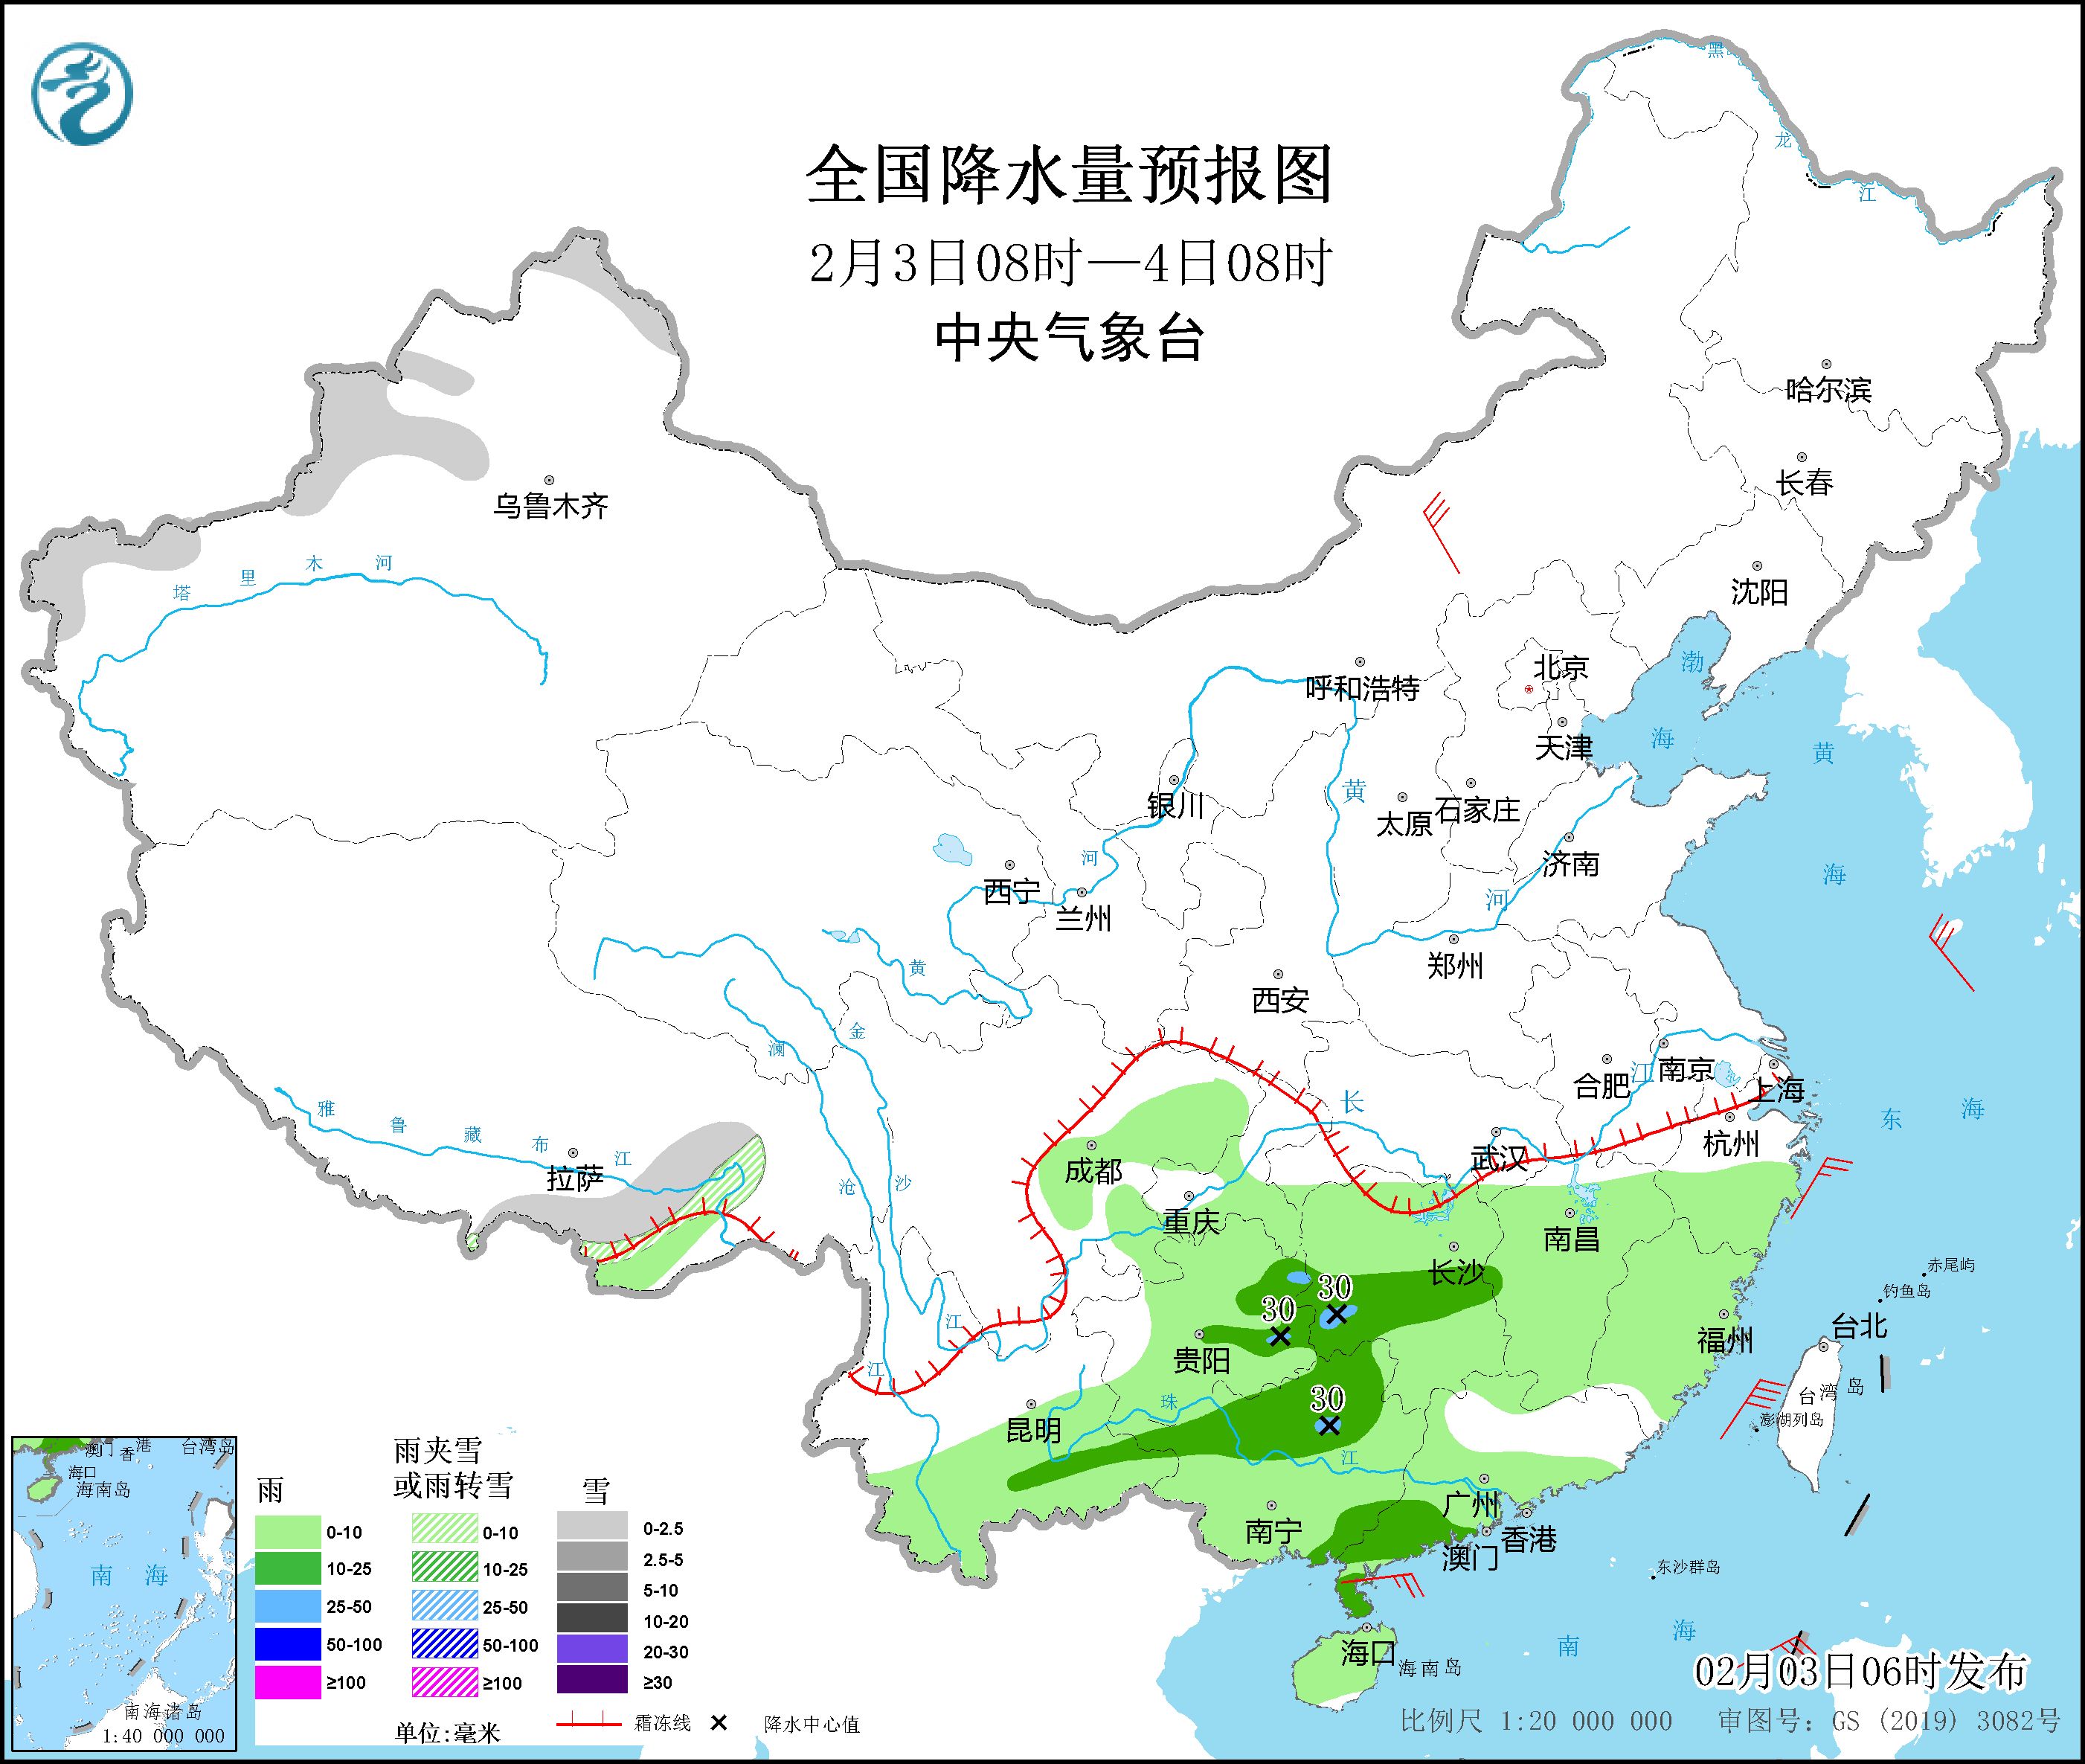 未来三天南方雨势逐渐增强 长江以北地区气温回升